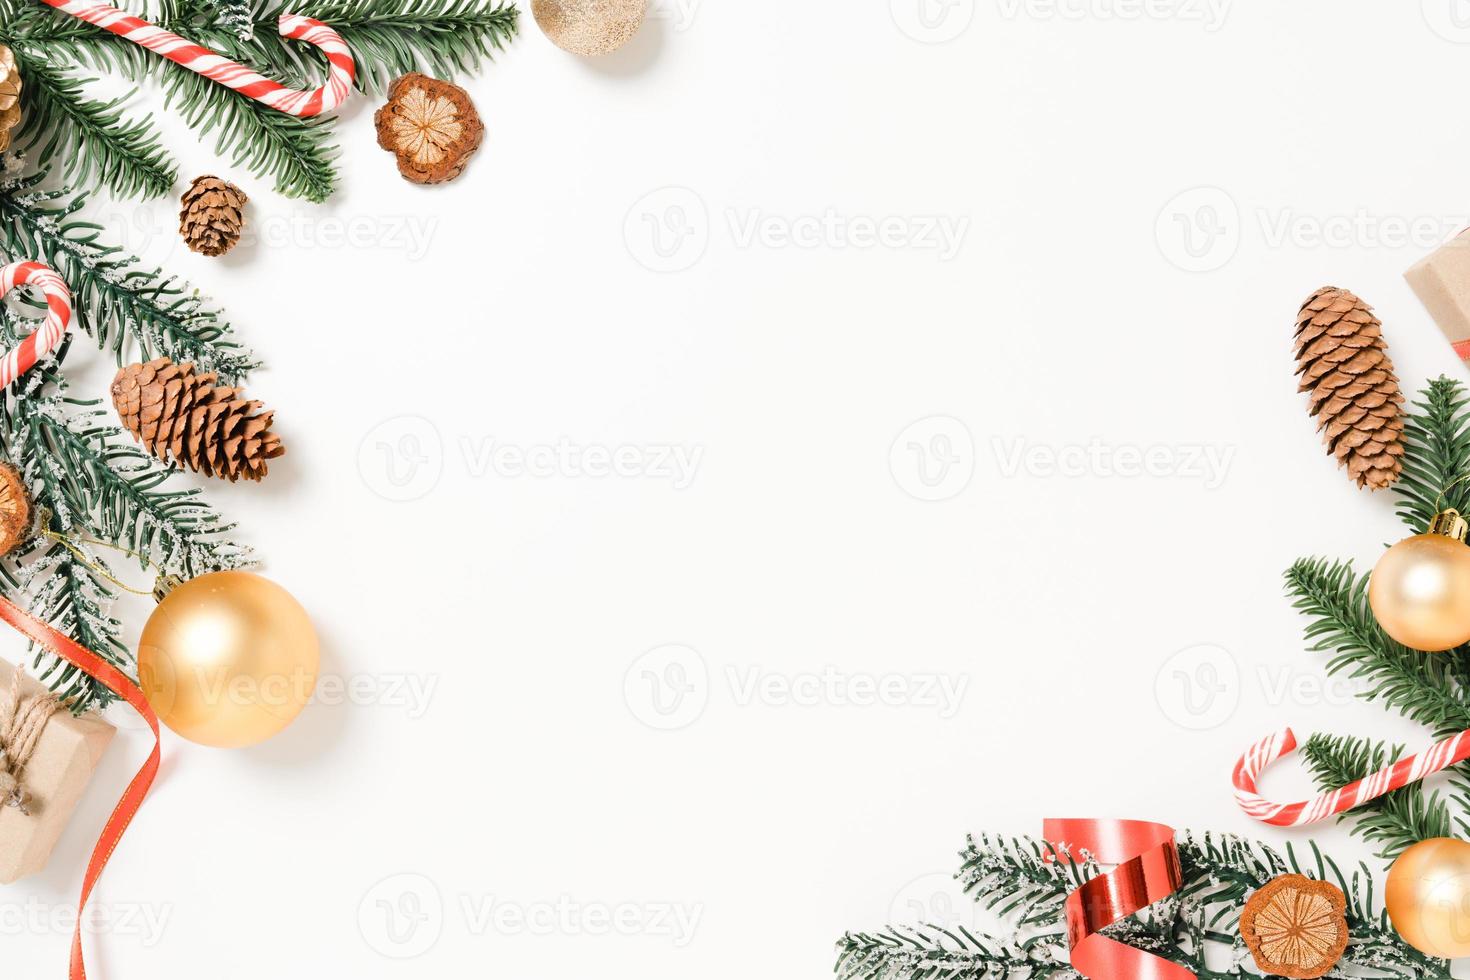 mínima criação plana lay de composição tradicional de Natal e temporada de férias de ano novo. vista superior decorações de Natal de inverno em fundo branco com espaço em branco para texto. copie a fotografia do espaço. foto